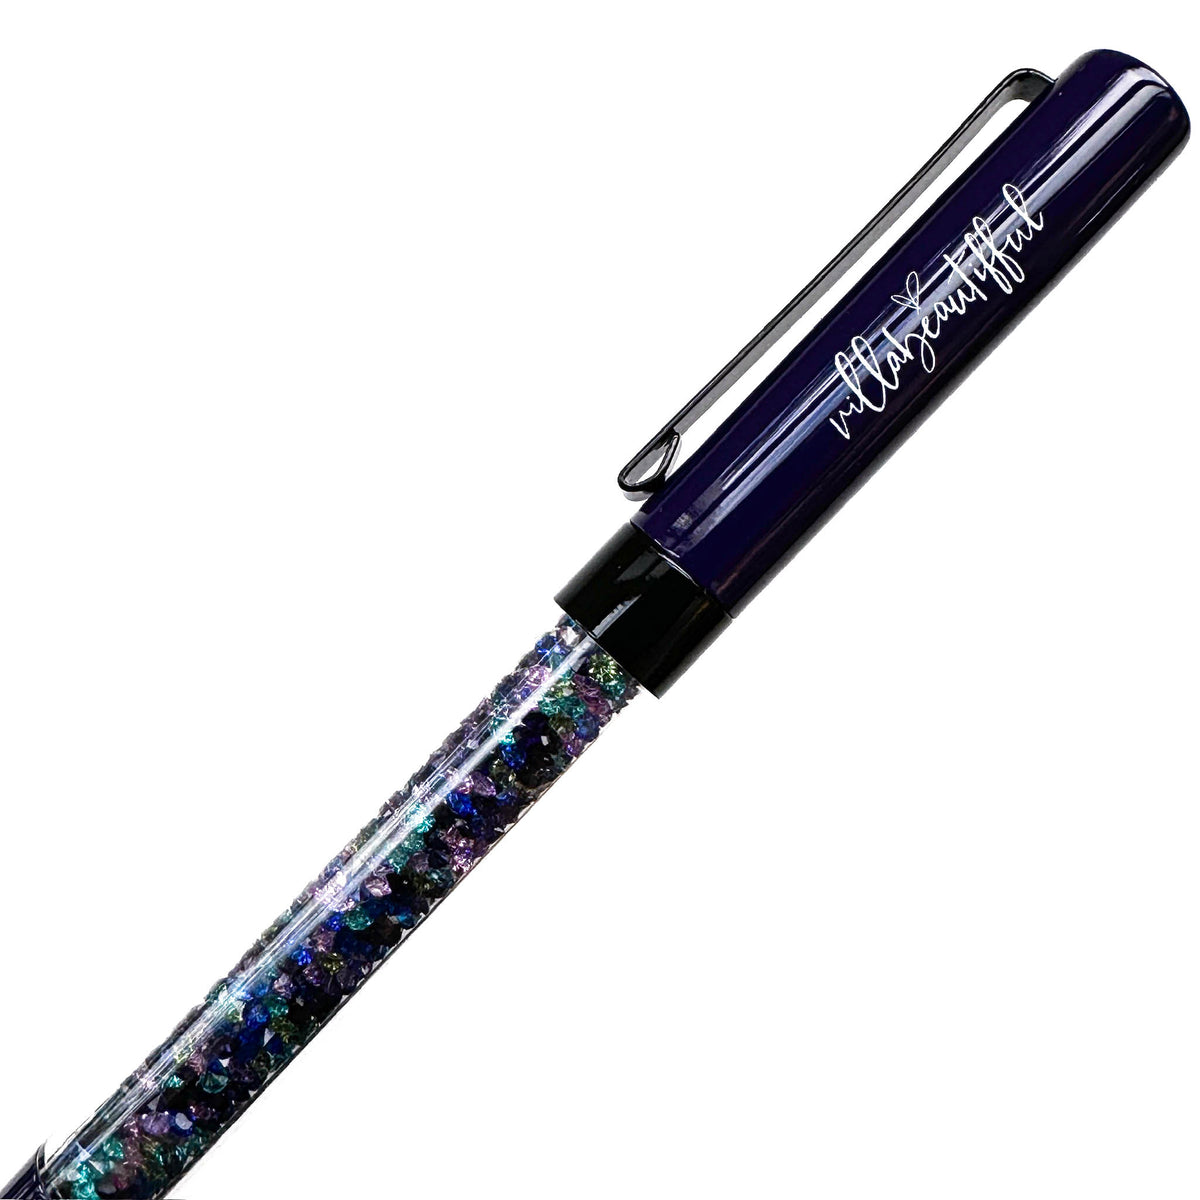 Northern Lights Crystal VBPen | limited kit pen